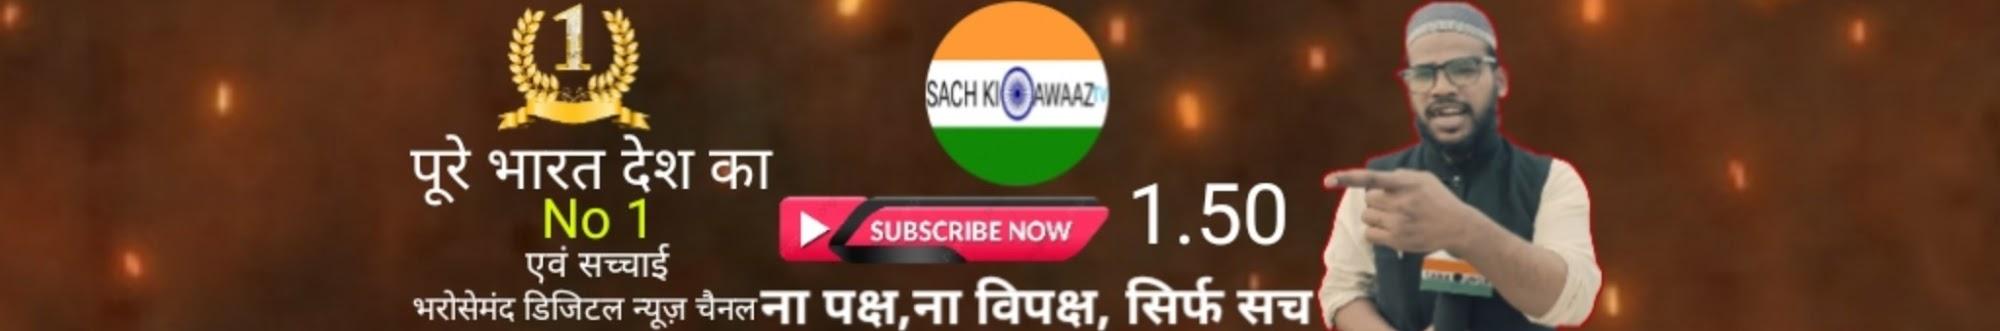 Sach Ki Awaaz Tv